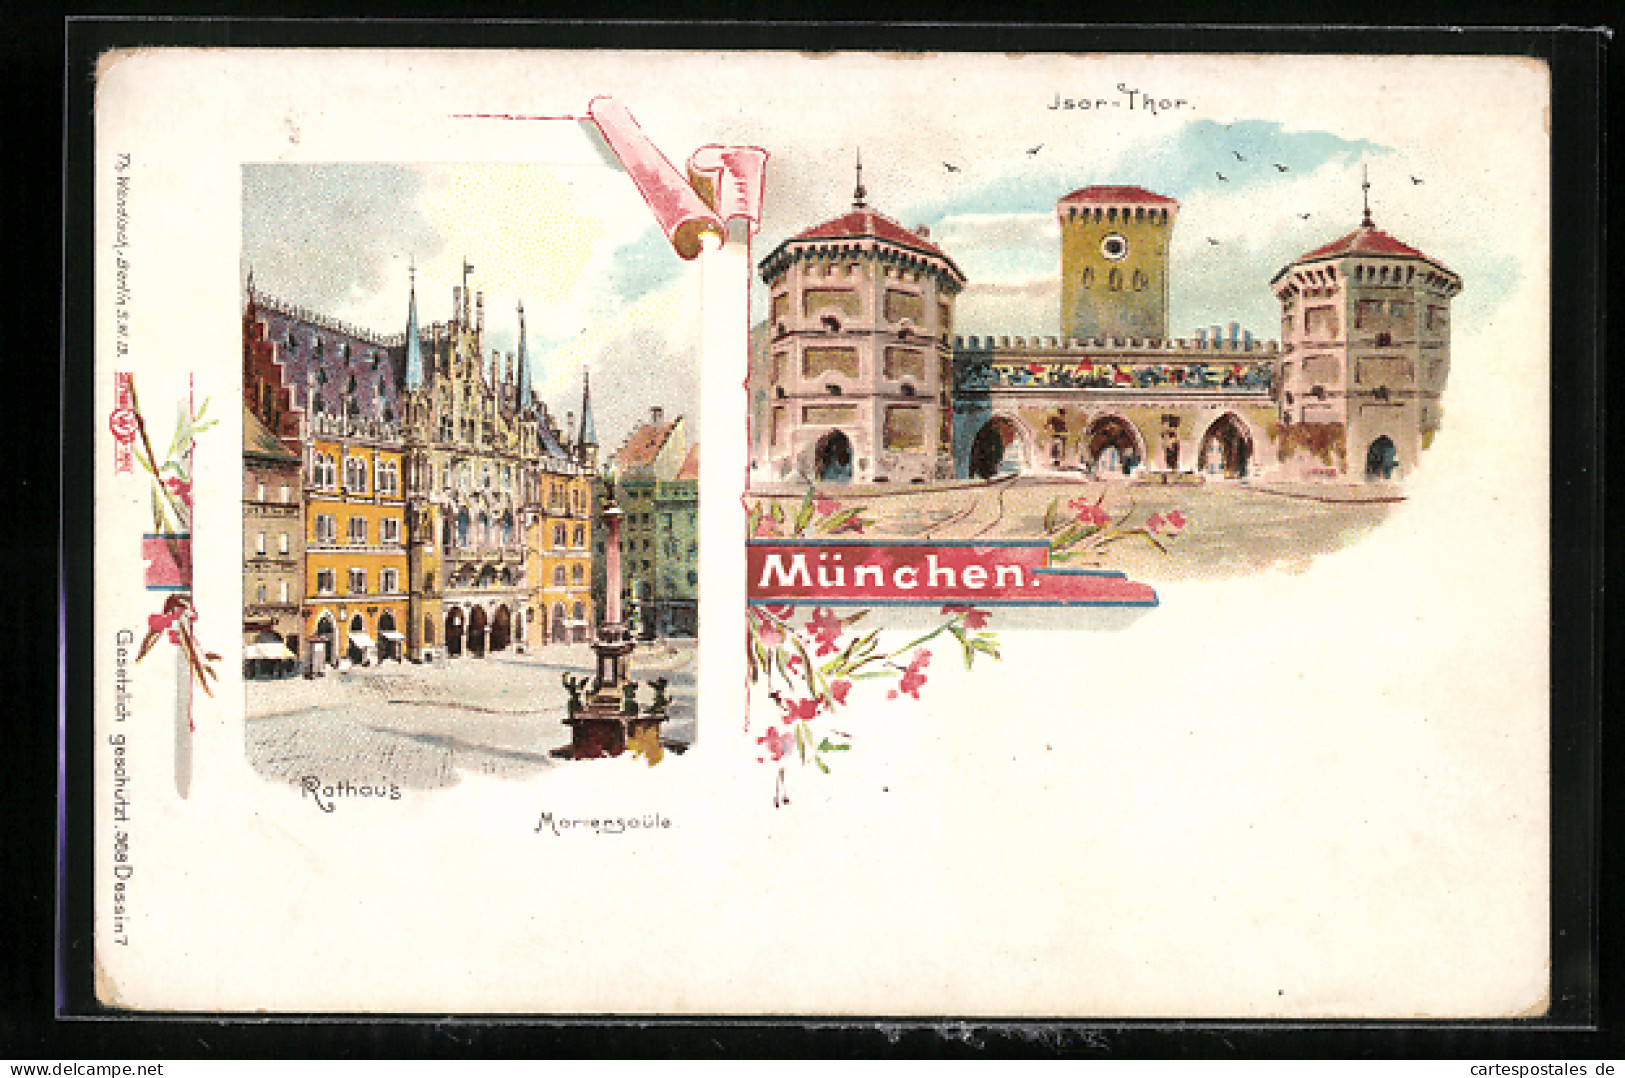 Lithographie München, Rathaus, Mariensäule, Isar-Thor  - Muenchen